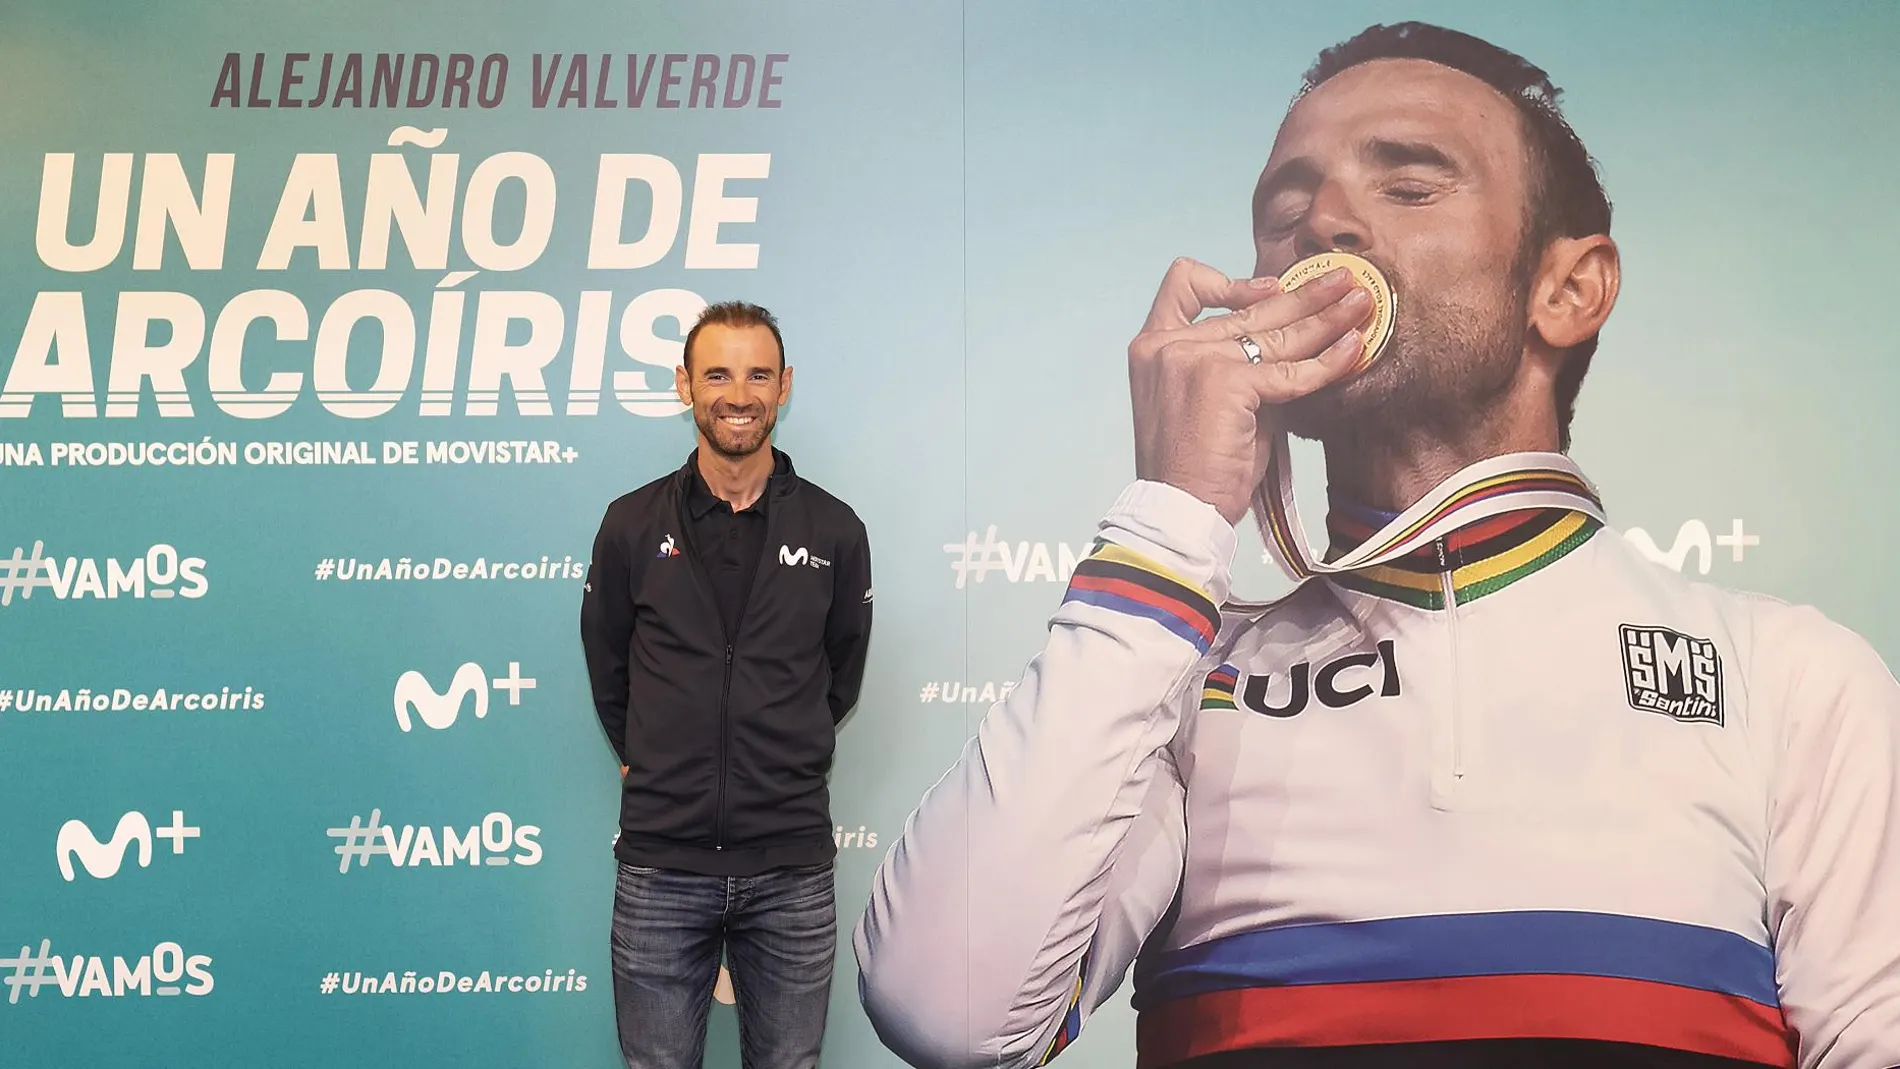 Alejandro Valverde, junto al cartel promocional del documental "Un año de arcoíris"